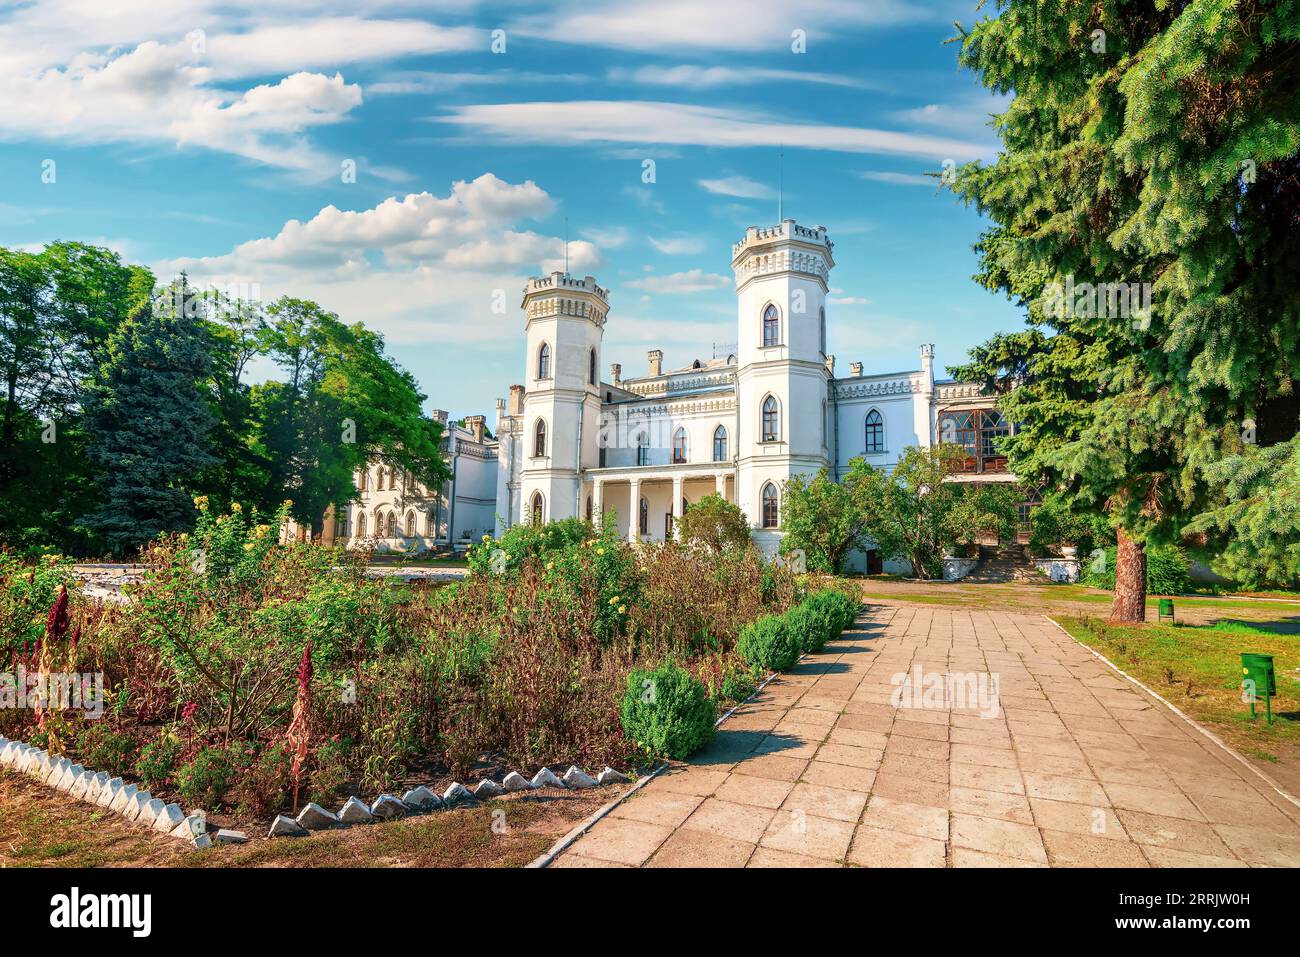 Belle vue sur le château de Sharovsky dans un parc vert incroyable Banque D'Images